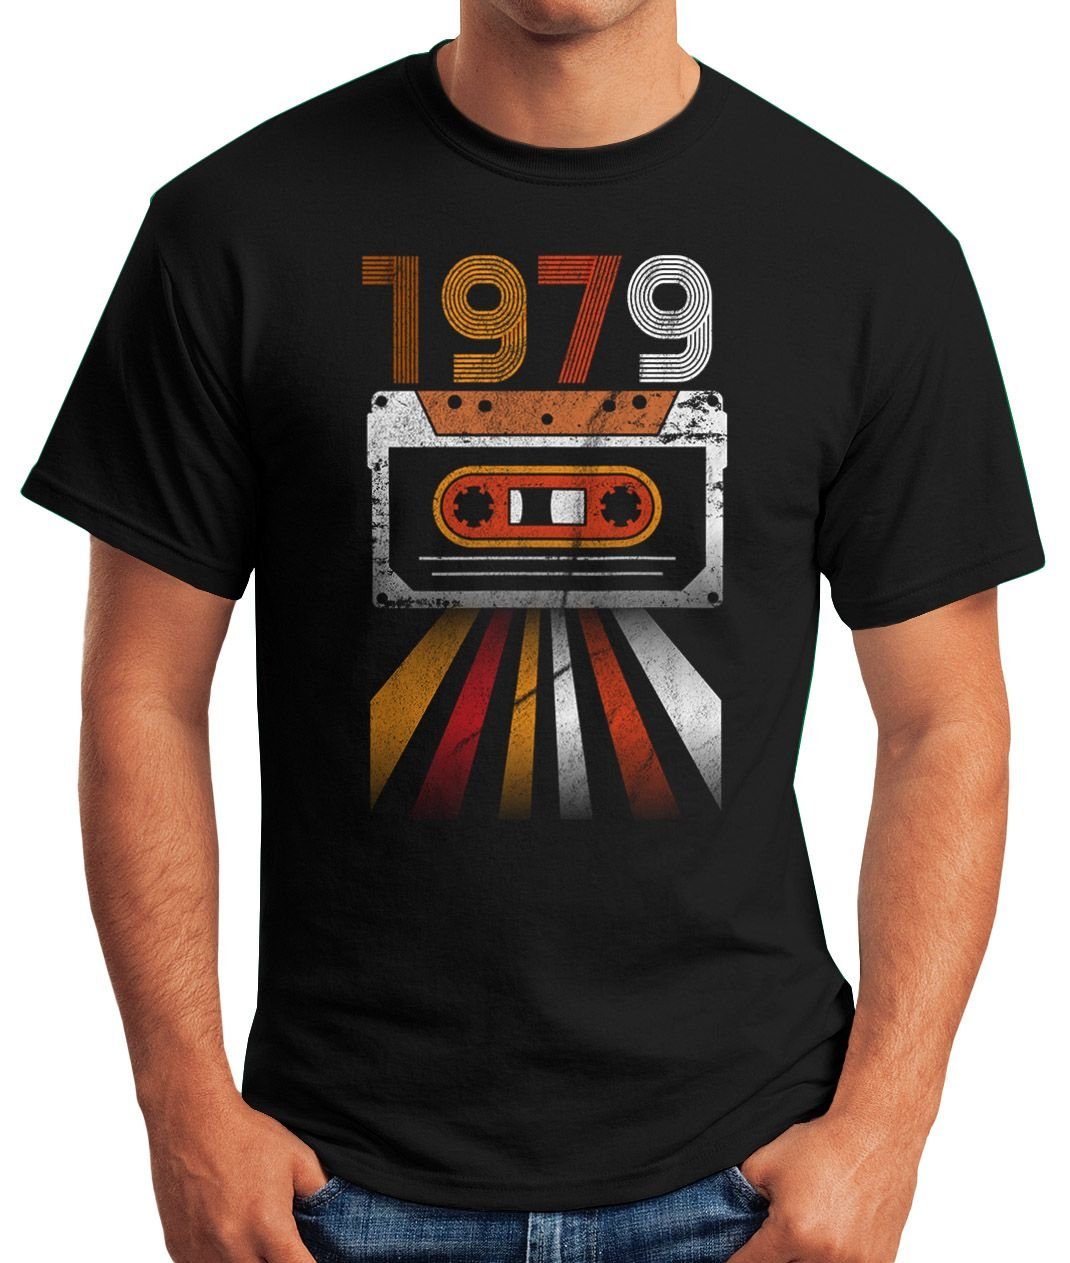 Herren Geschenk-Shirt 70er Vintage Print mit Moonworks® T-Shirt MoonWorks Jahre Print-Shirt Geburtstag 1979 schwarz Retro Siebziger